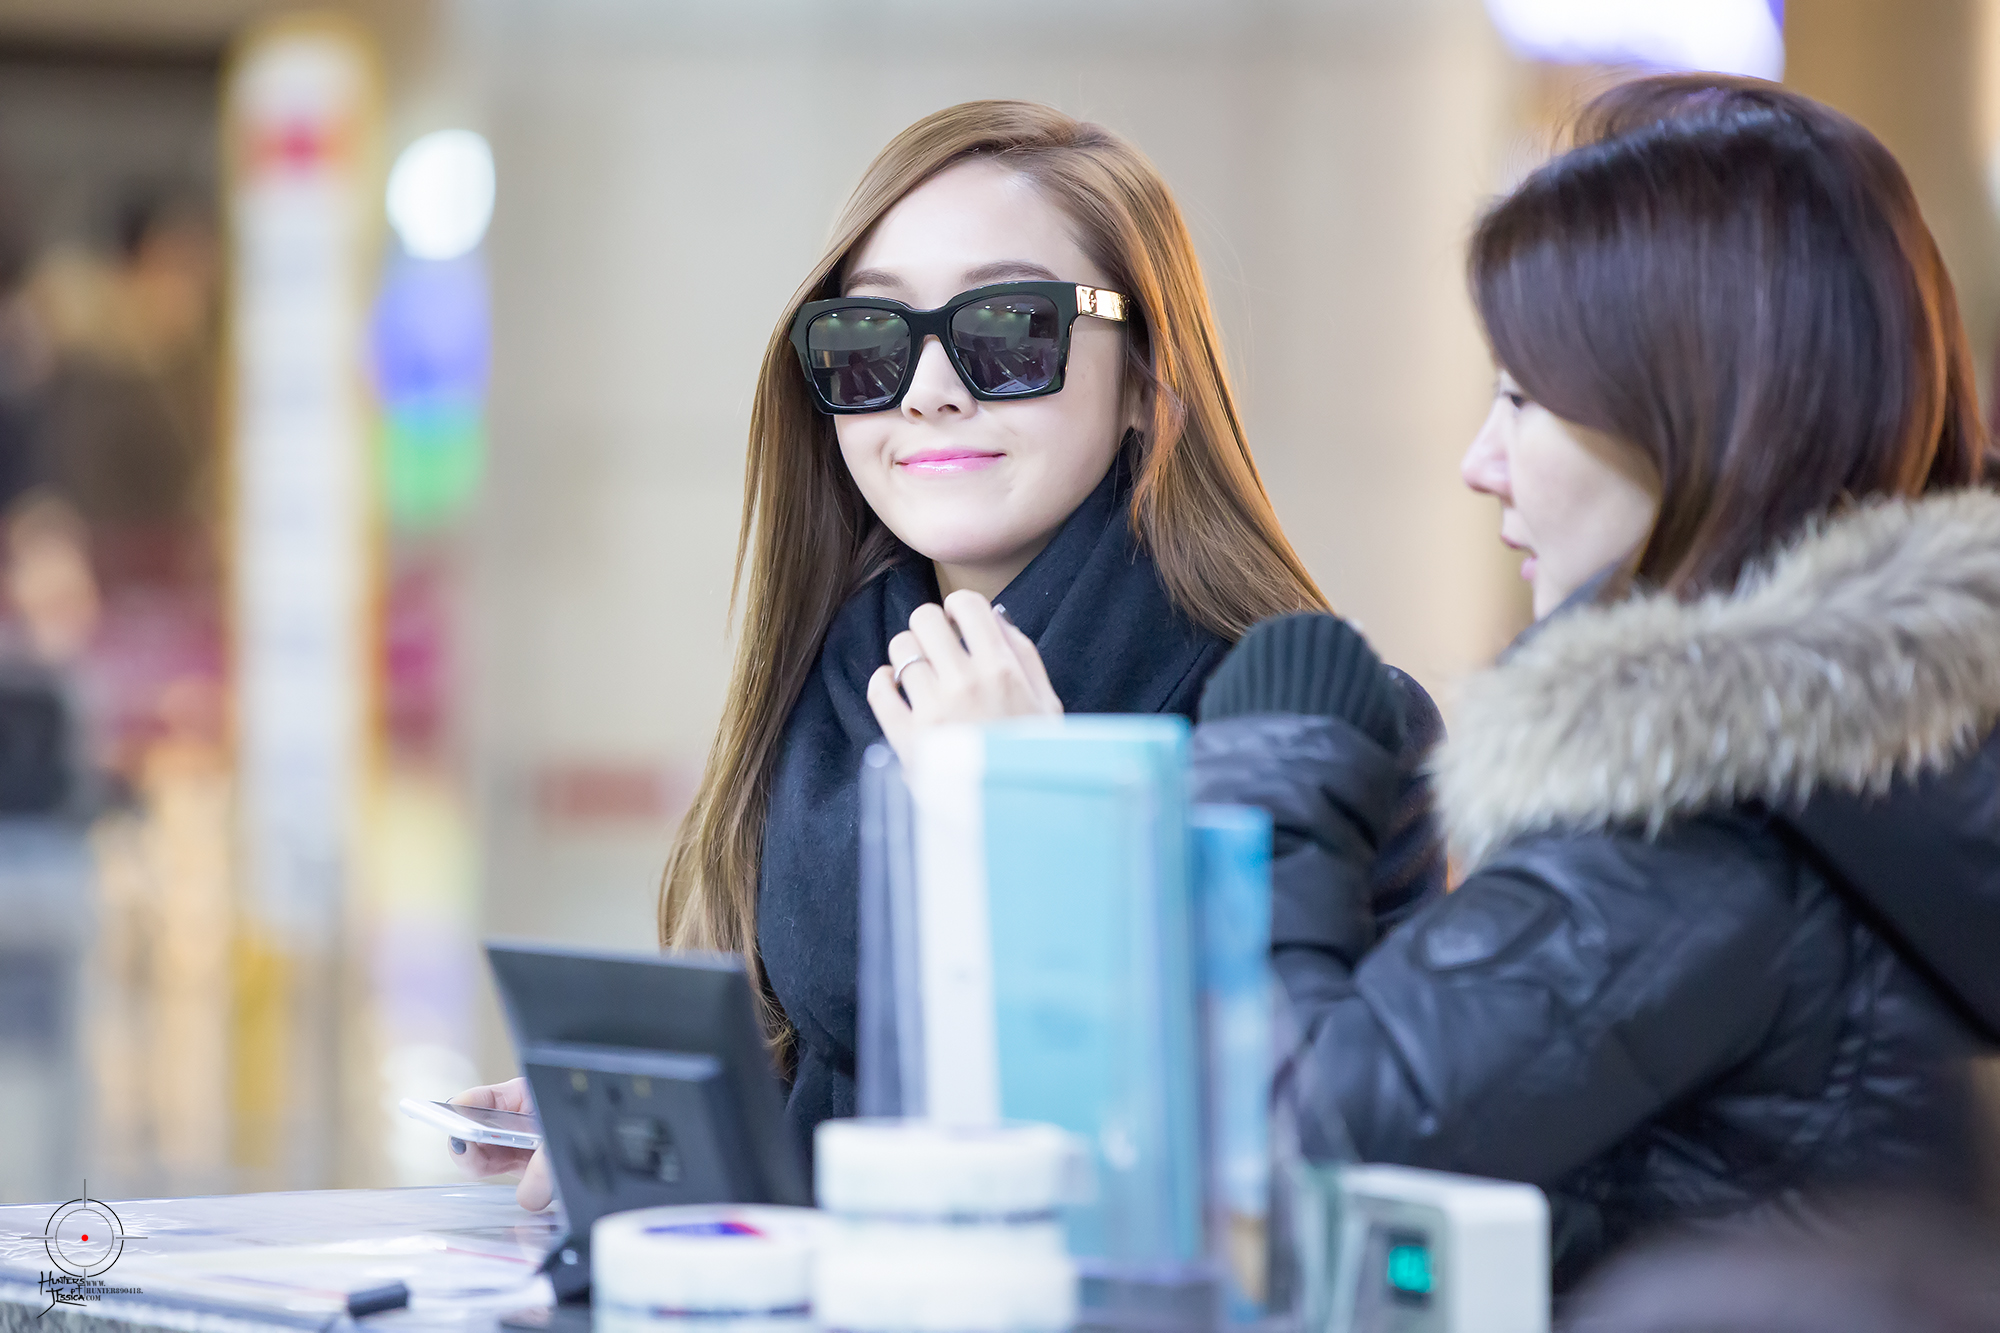 [PIC][23-12-2014]Jessica khởi hành đi Bắc Kinh để tham dự "Sohu Fashion Awards" vào sáng nay 246BED35549BBE5634124A